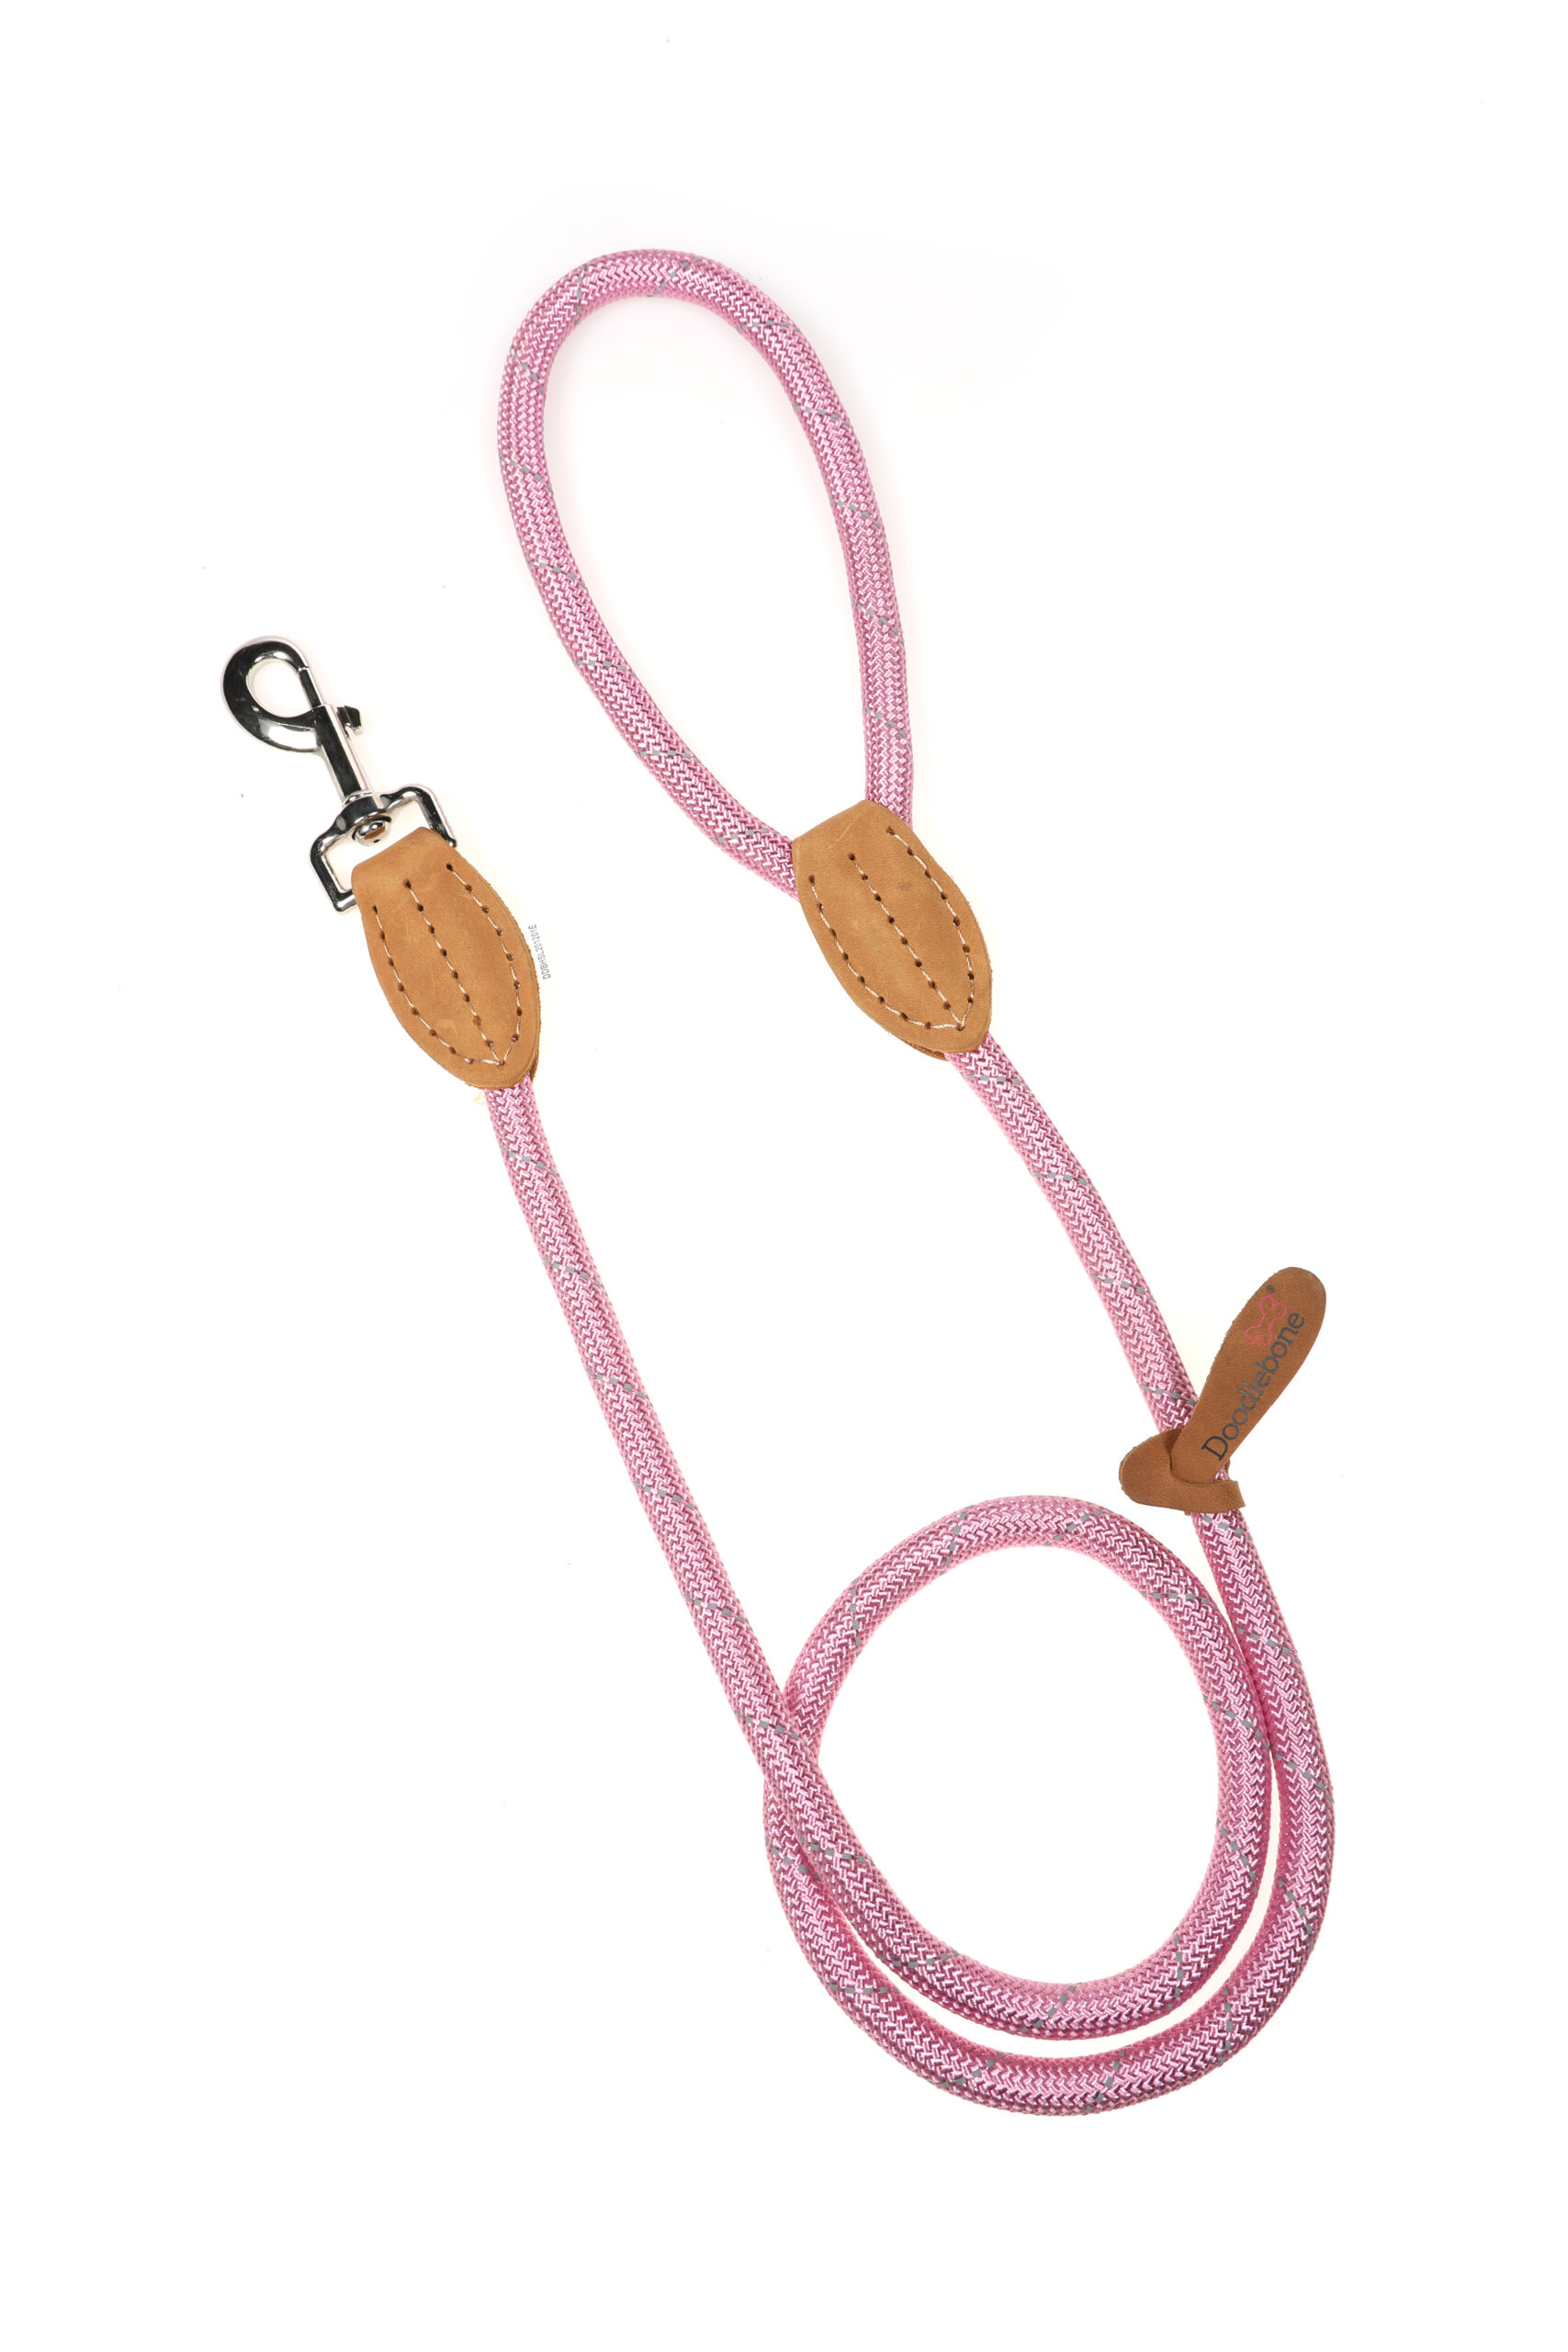 Doodlebone Originals Light Pink Rope Dog Lead